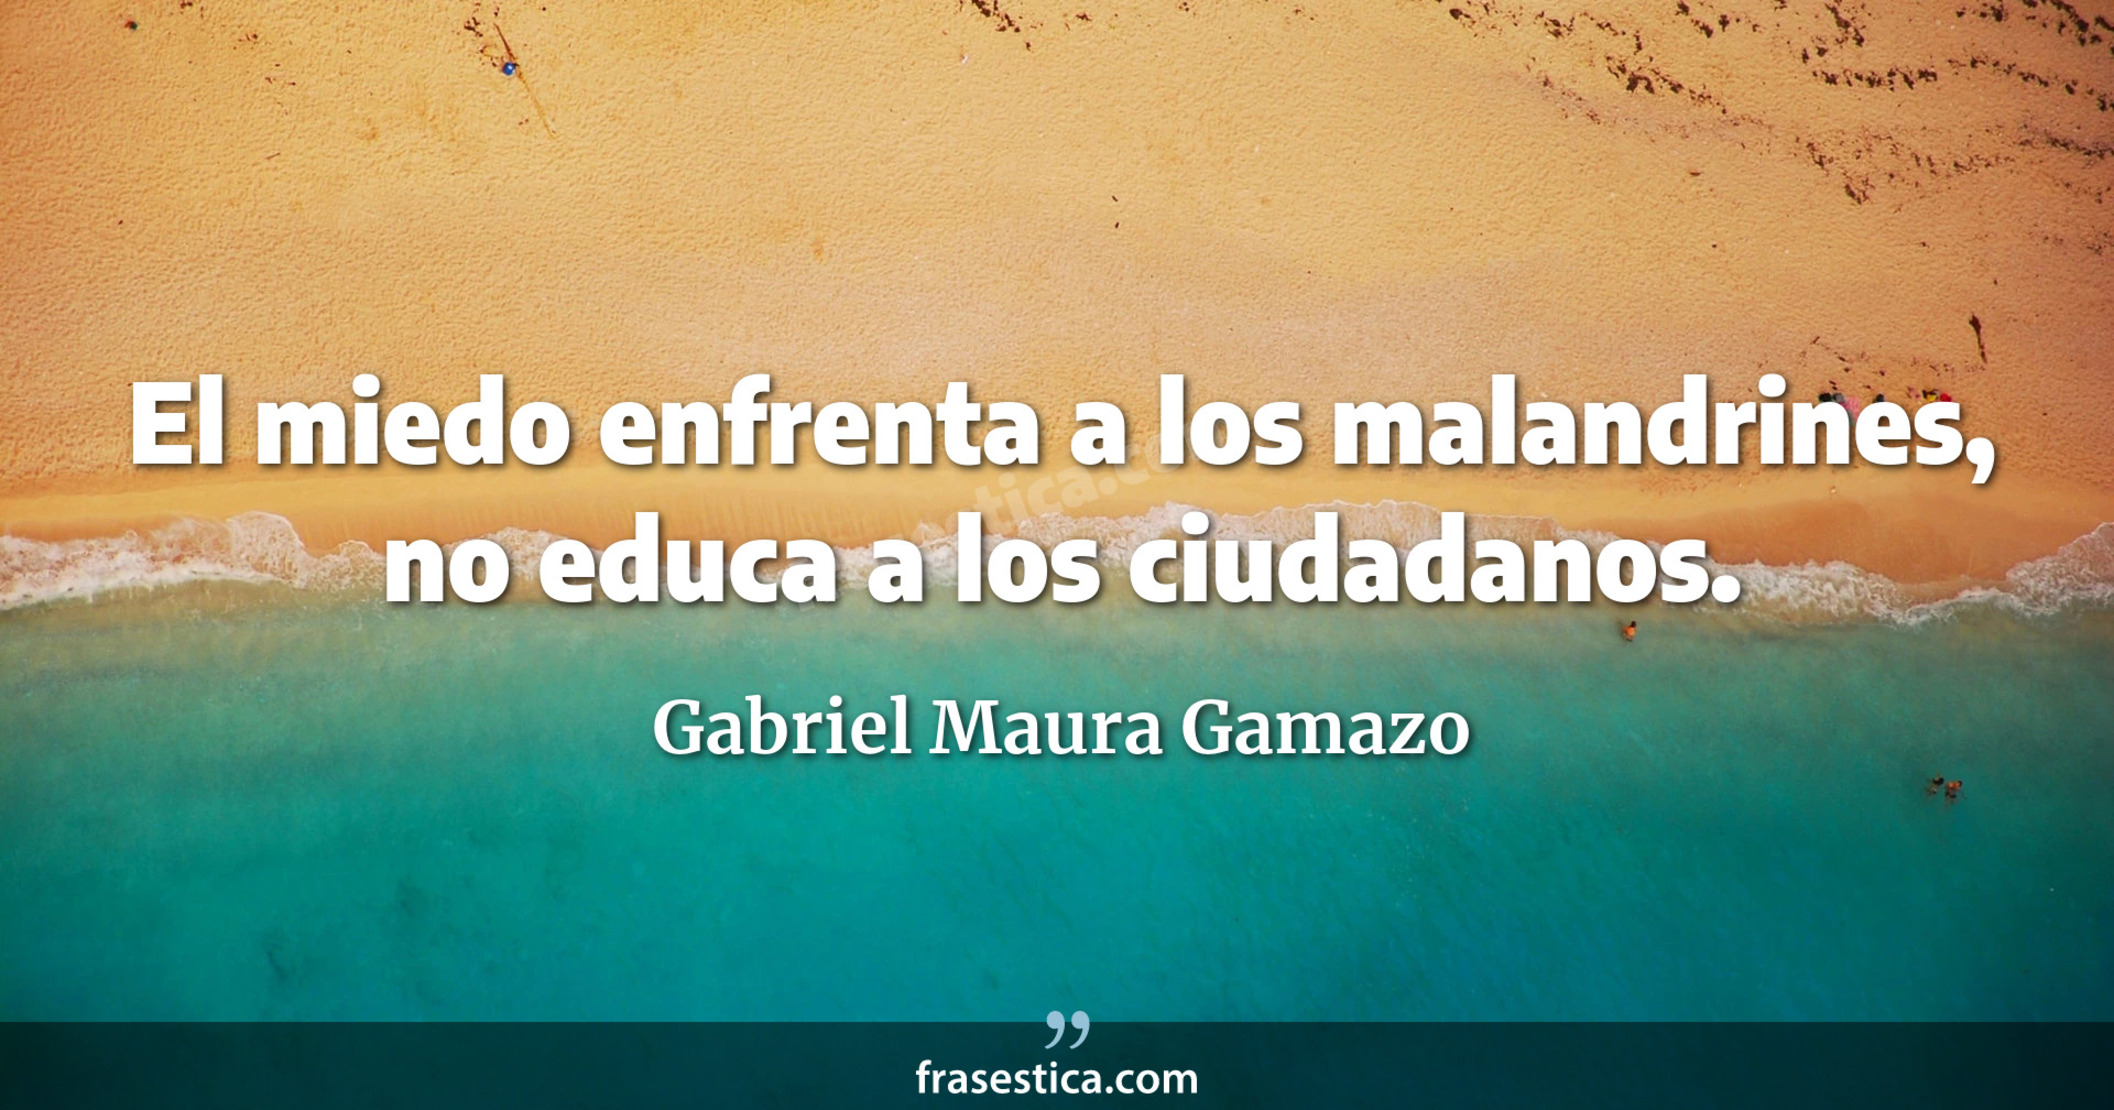 El miedo enfrenta a los malandrines, no educa a los ciudadanos. - Gabriel Maura Gamazo